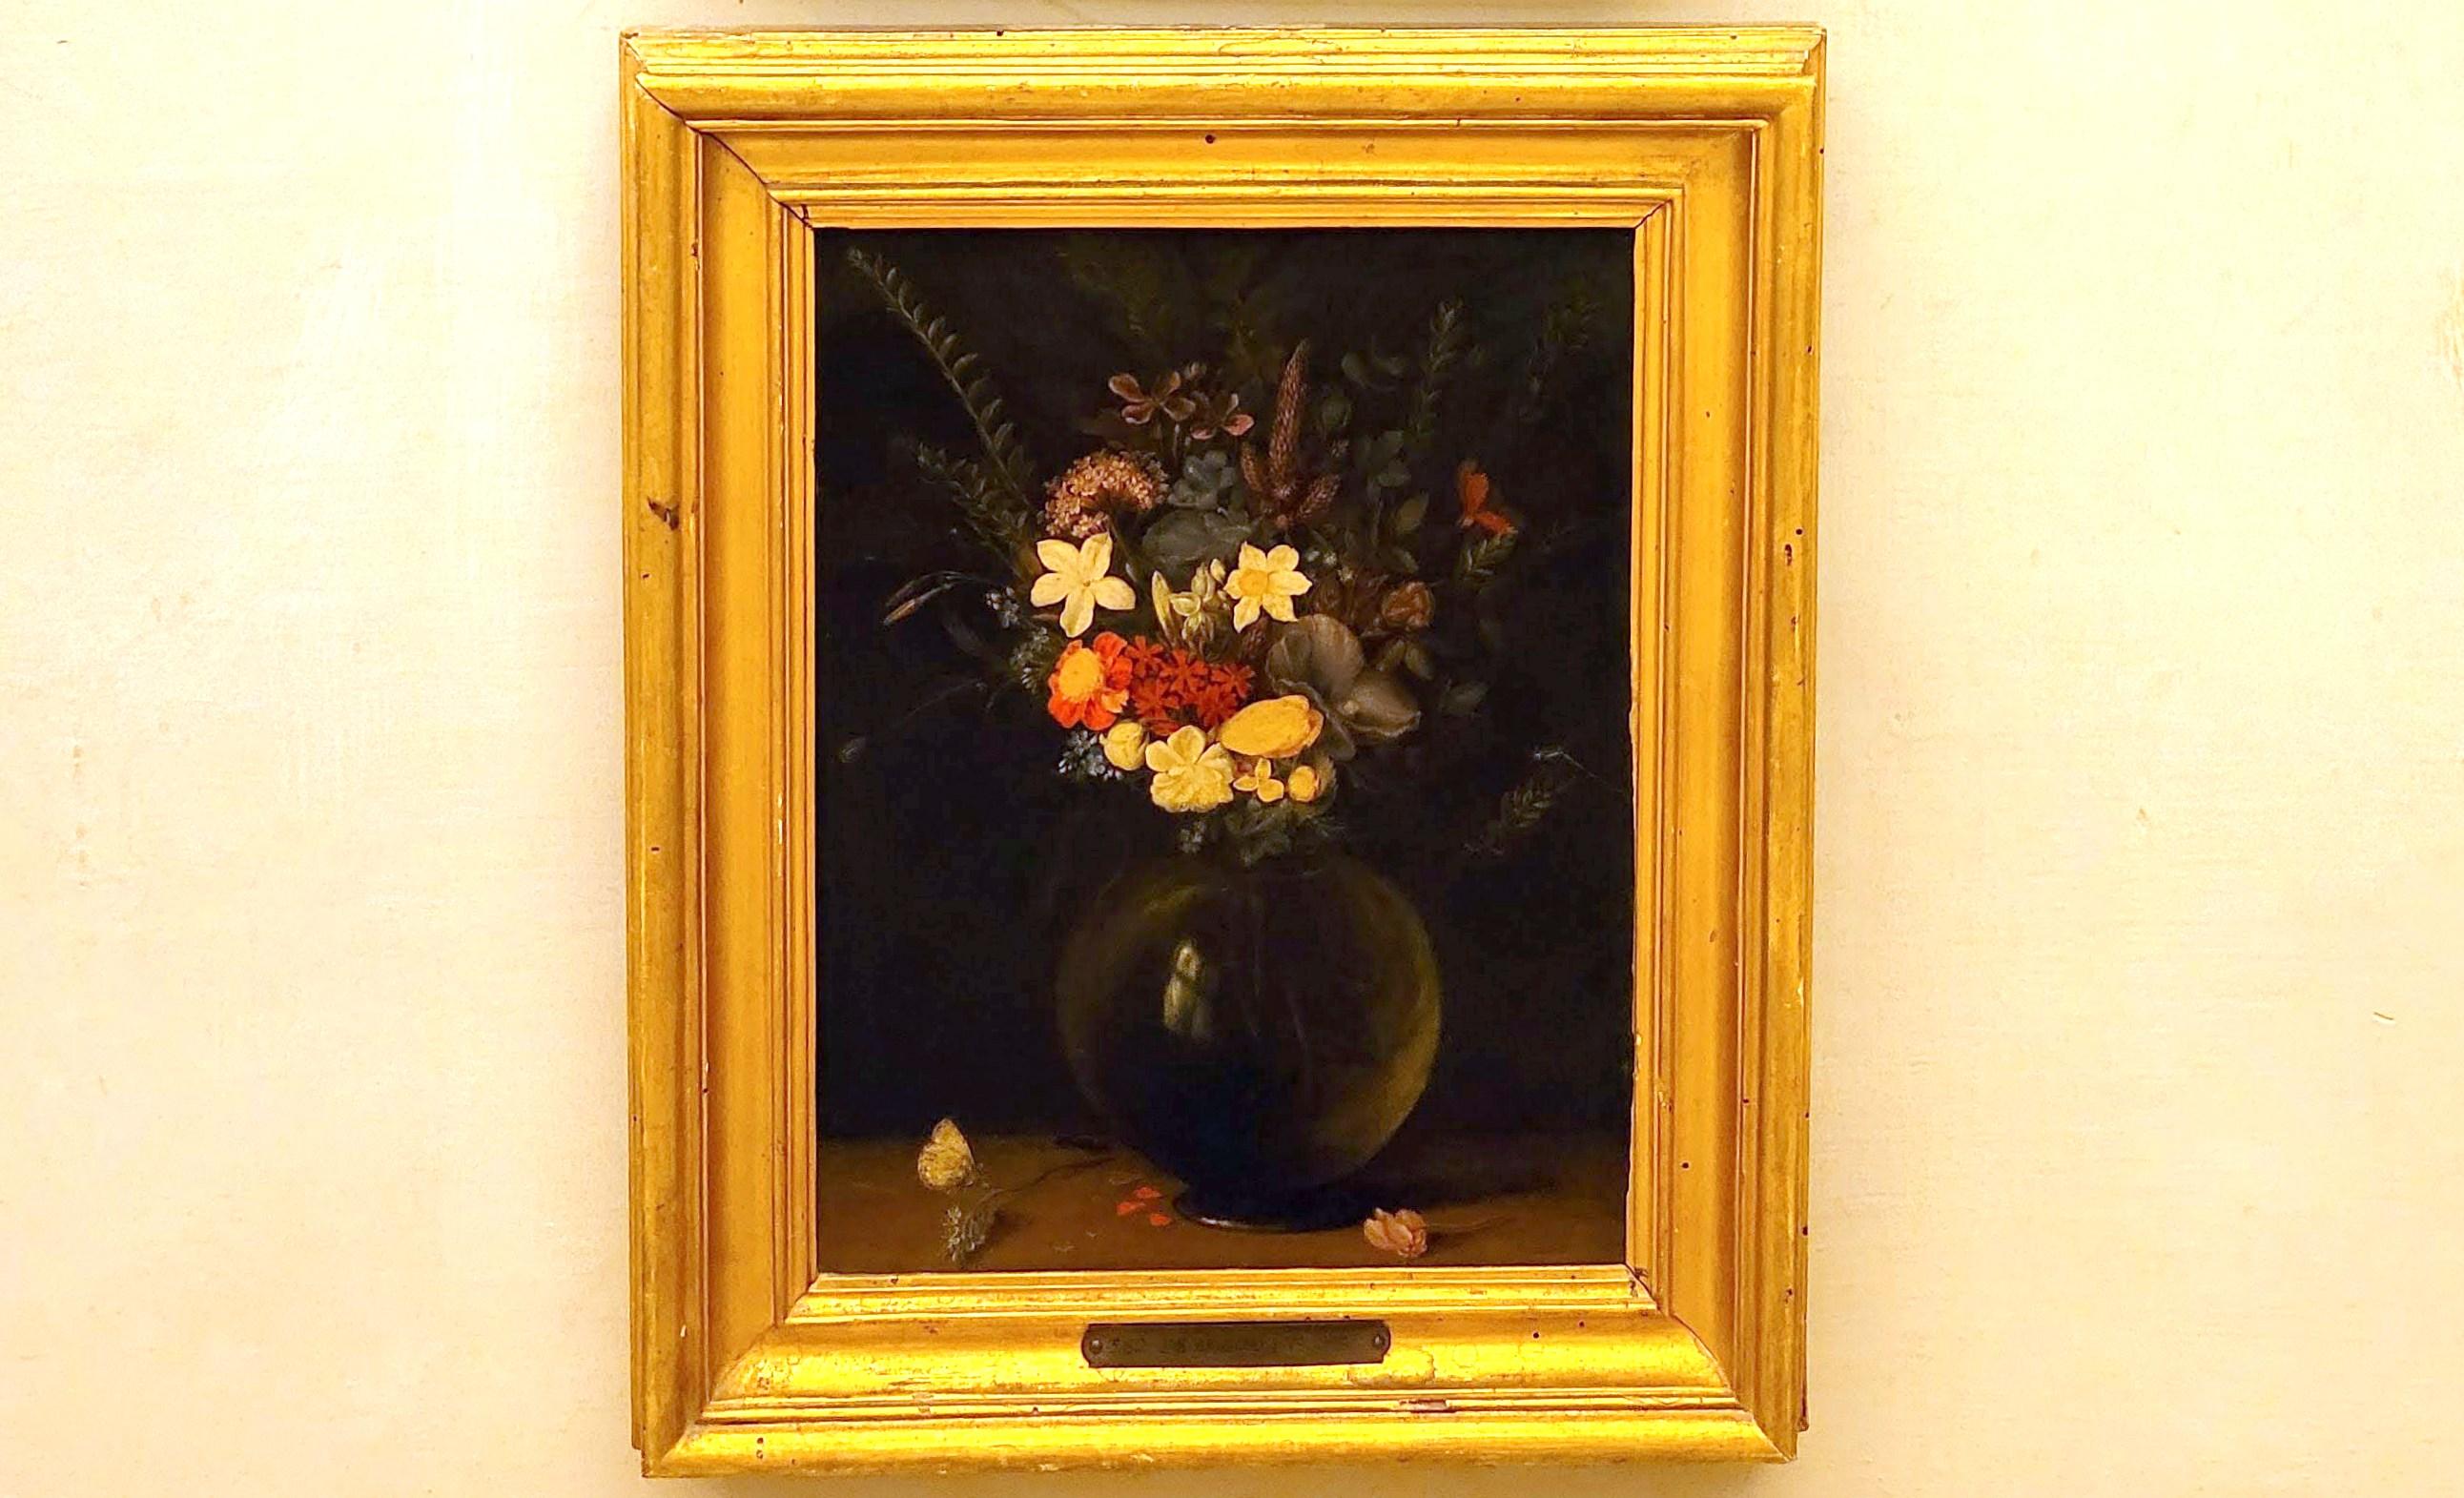 Jan Brueghel der Ältere (Samtbrueghel, Blumenbrueghel) (1593–1621), Vase mit Blumen, Rom, Villa Borghese, Galleria Borghese, um 1591–1595, Bild 1/2